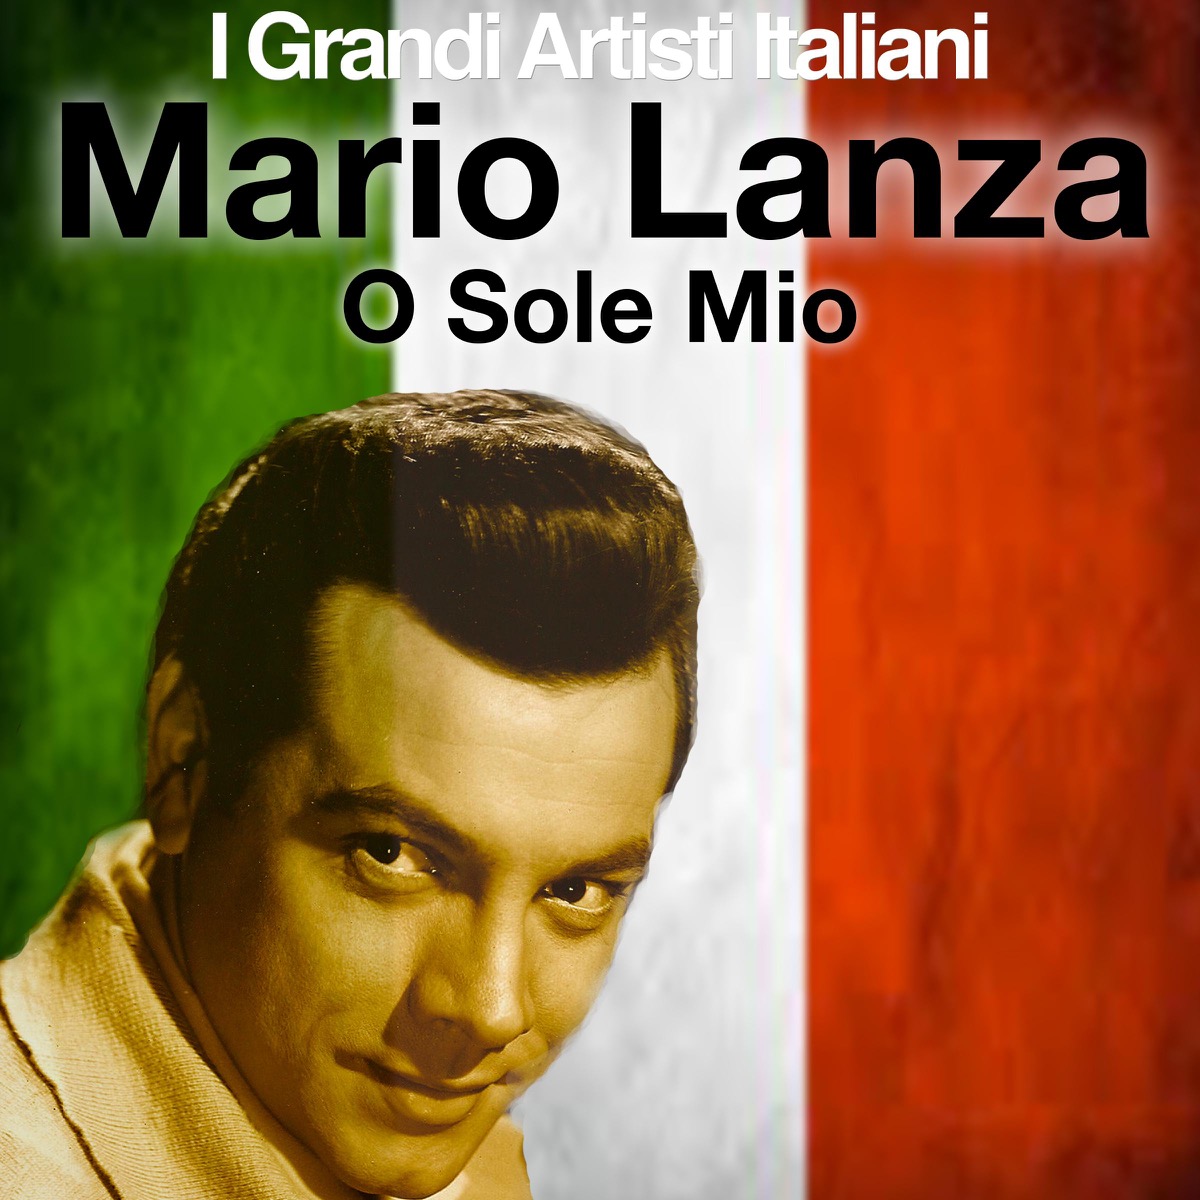 Mario Lanza マリオ ランツァ の情報まとめ Okmusic 全ての音楽情報がここに